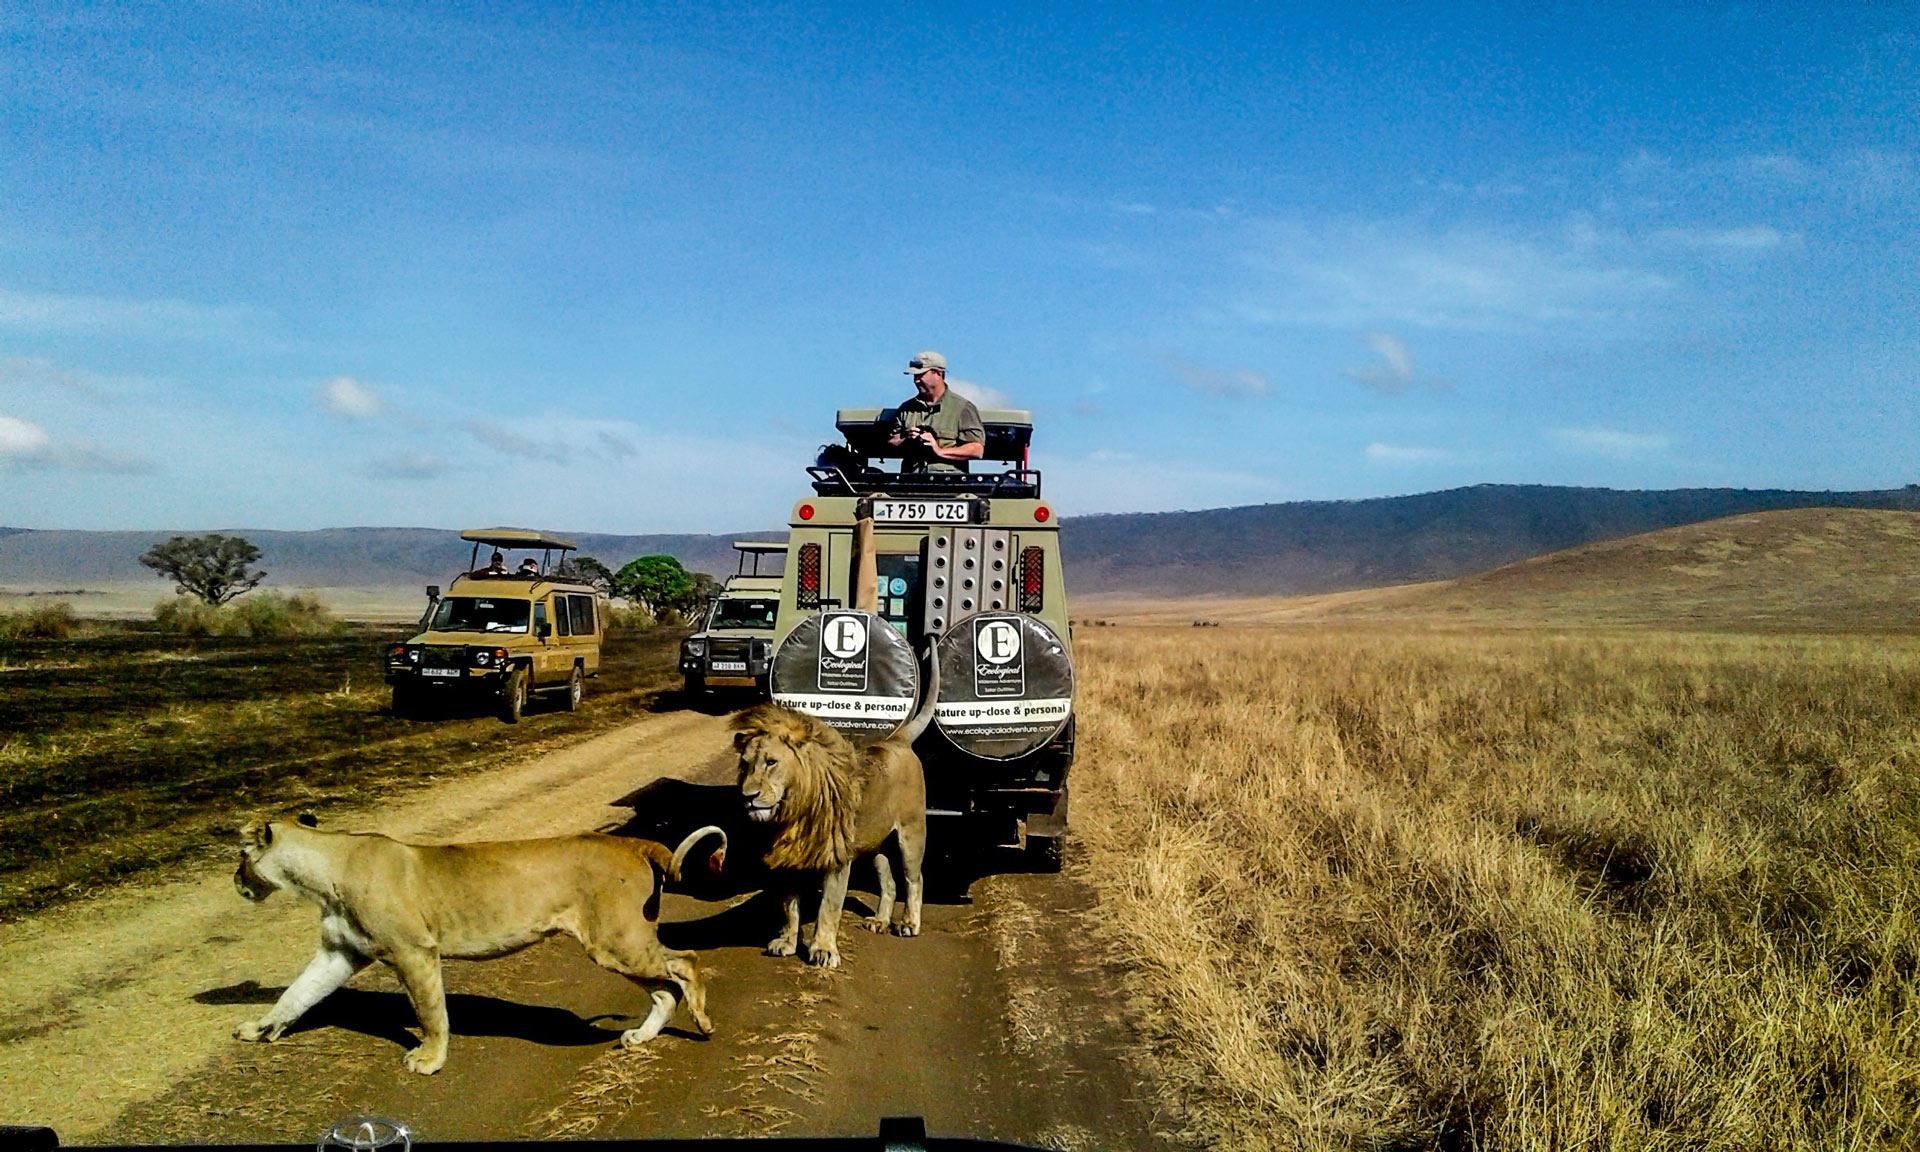 Ngorongoro Cater.